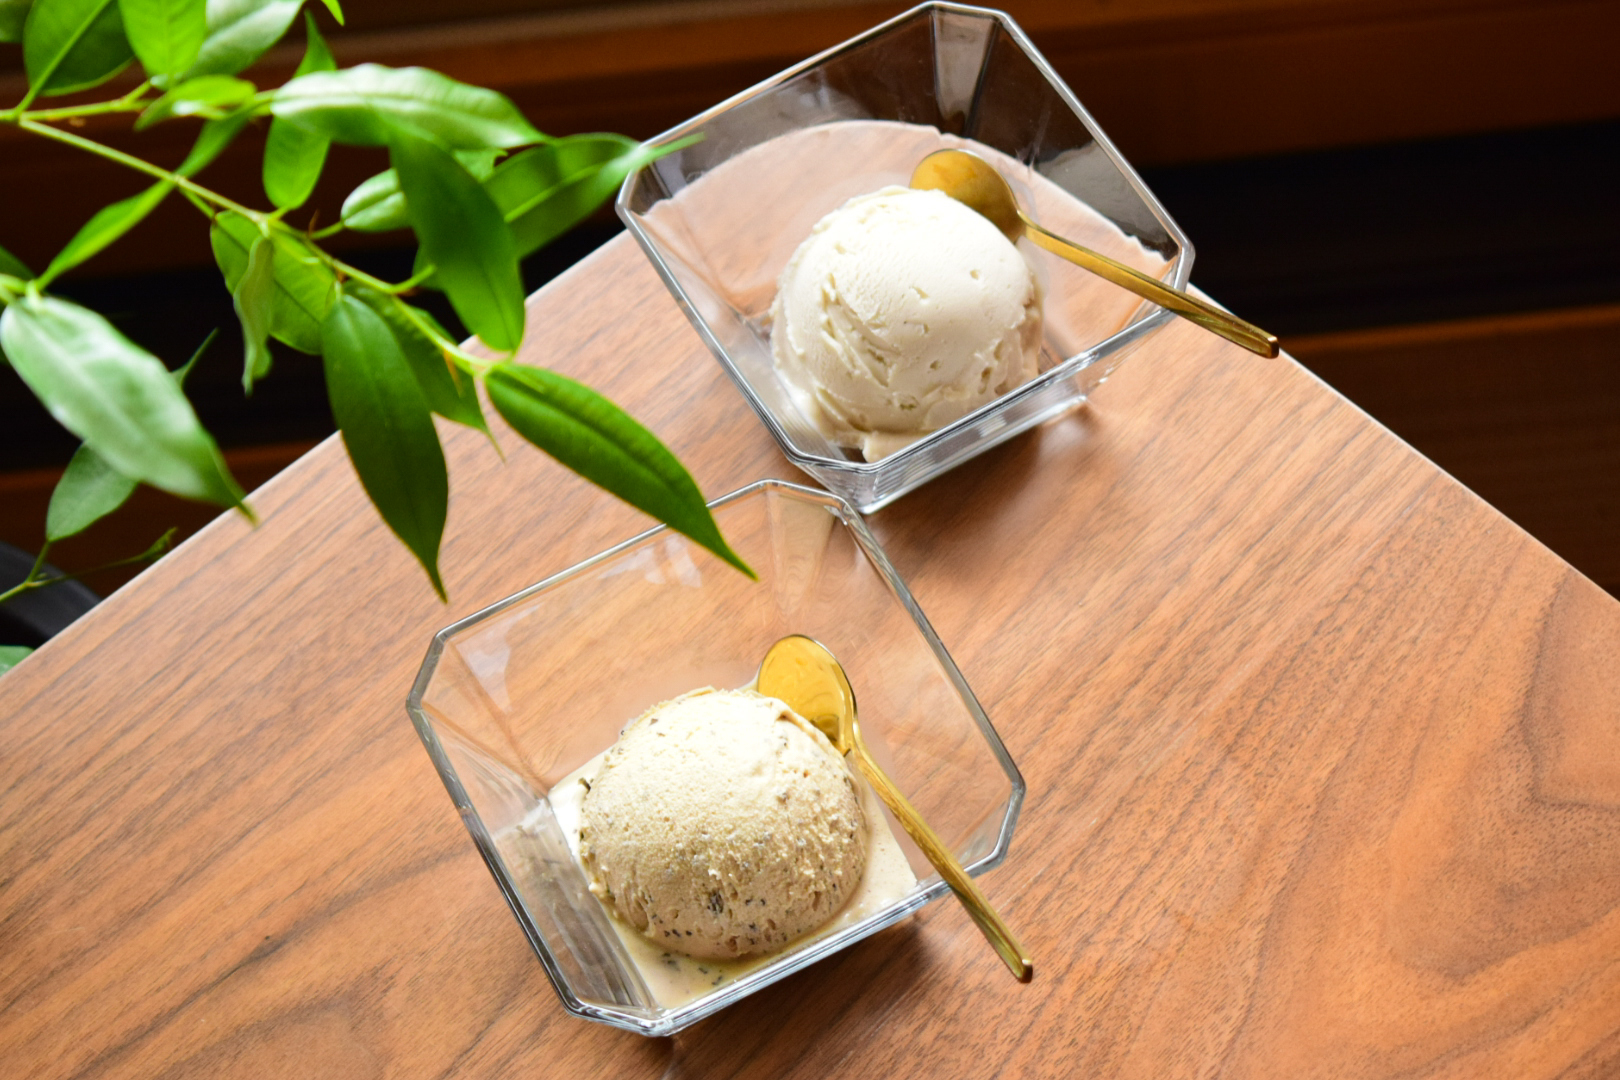 京都のプレマルシェ・ジェラテリアと
台湾カフェ「阿嬷豆花店」がコラボ　
台湾で人気の味がジェラートに！5月22日より提供開始